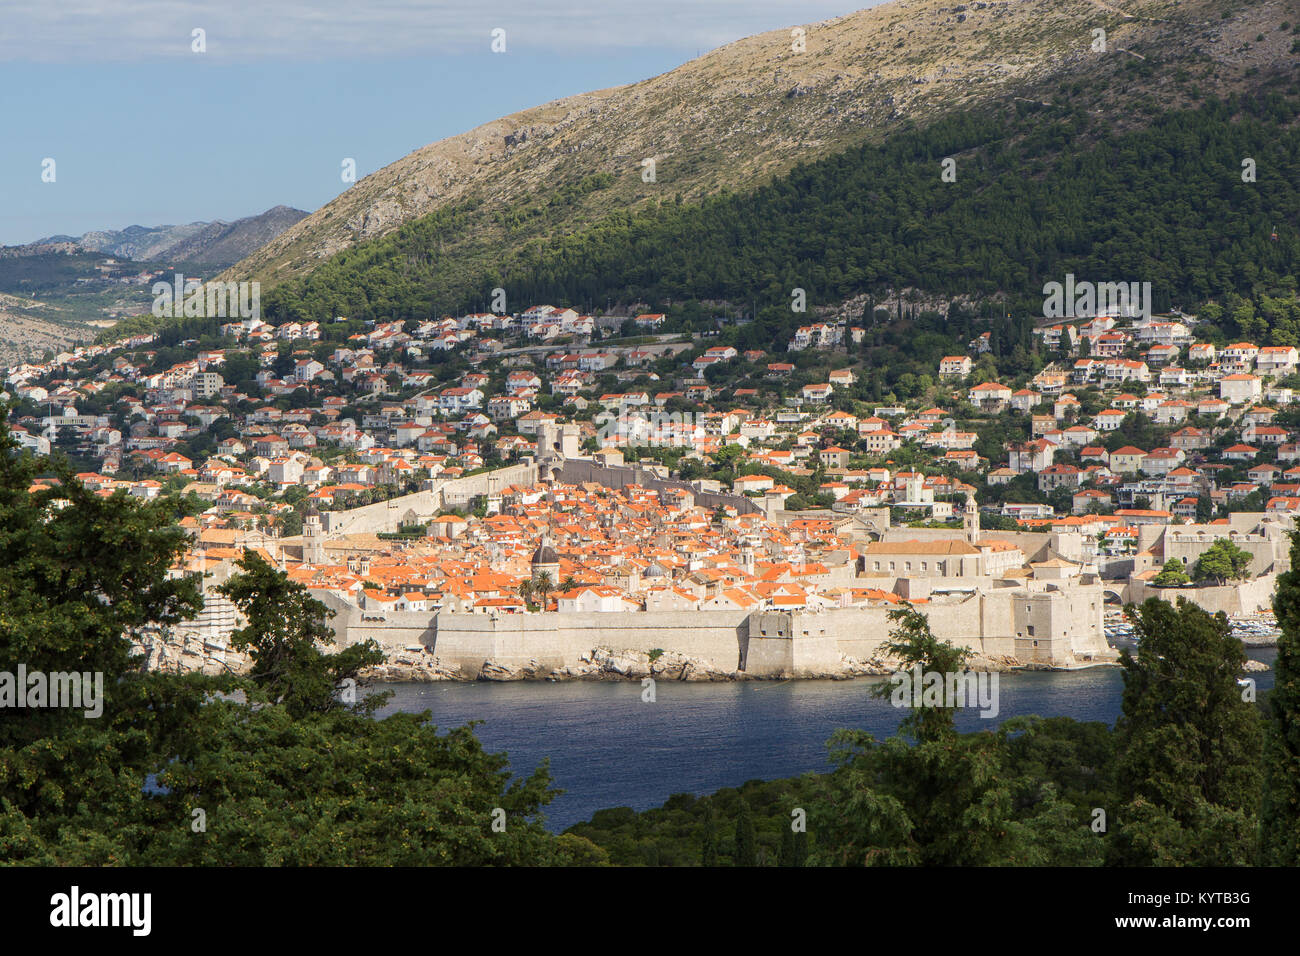 Vieille Ville, les bâtiments sur la colline et le mont Srd à Dubrovnik, Croatie, vu de la luxuriante île de Lokrum lors d'une journée ensoleillée. Banque D'Images